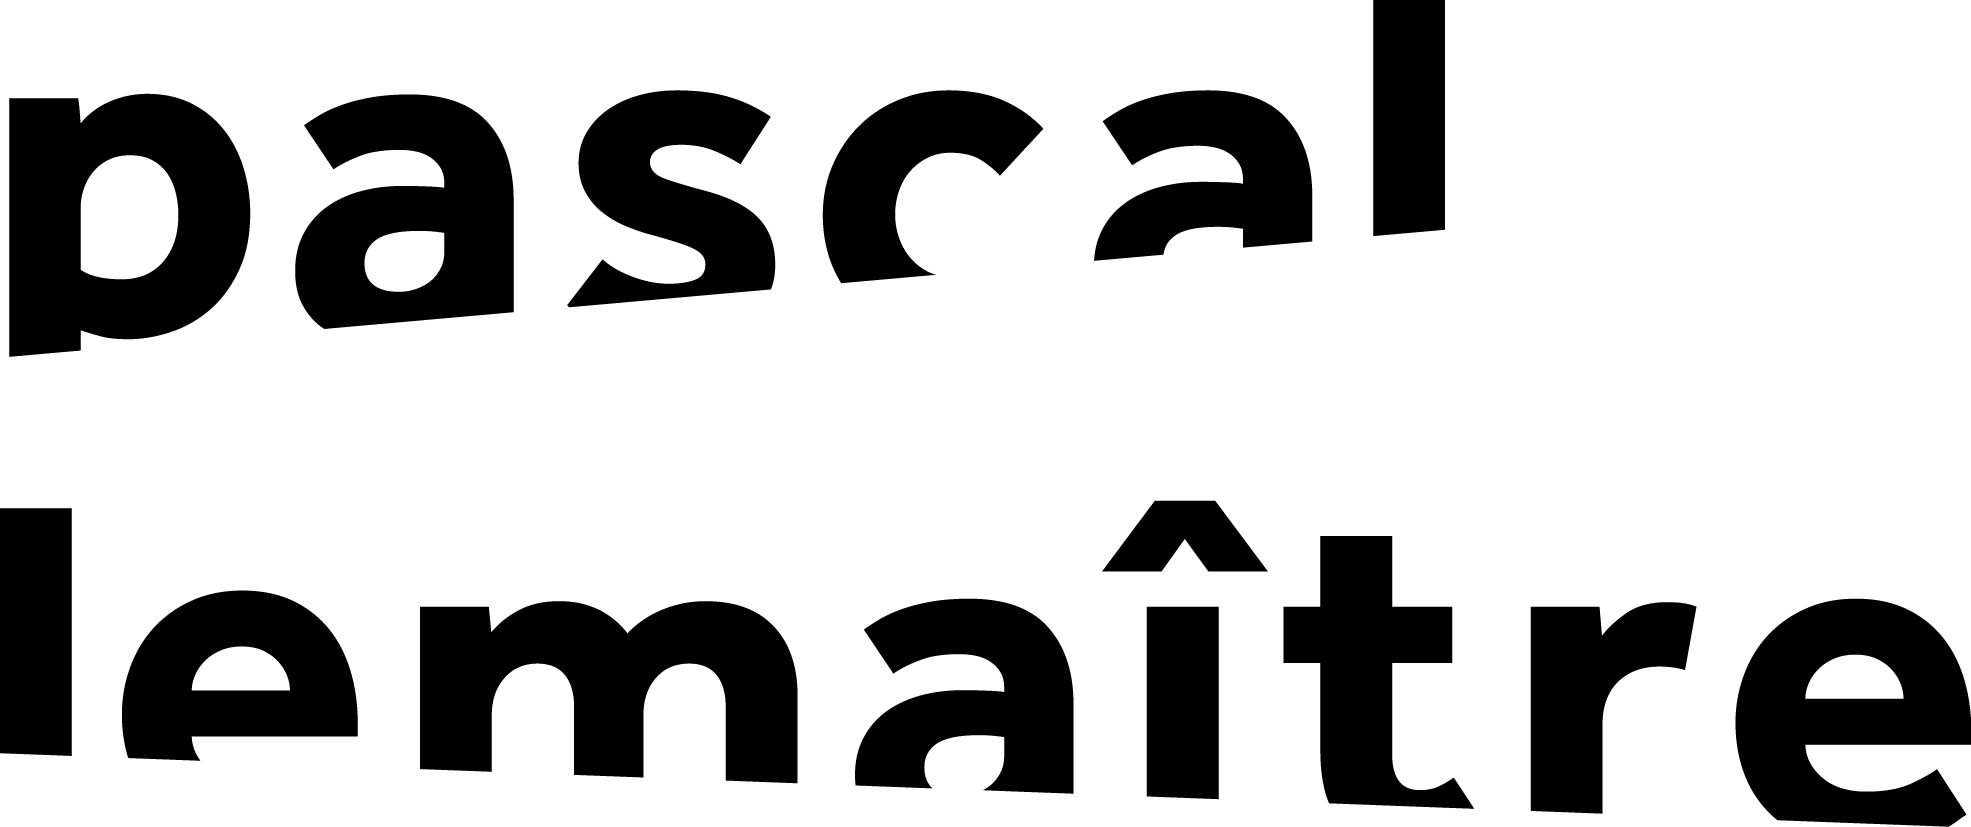 Pascal Logo - Pascal Lemaître